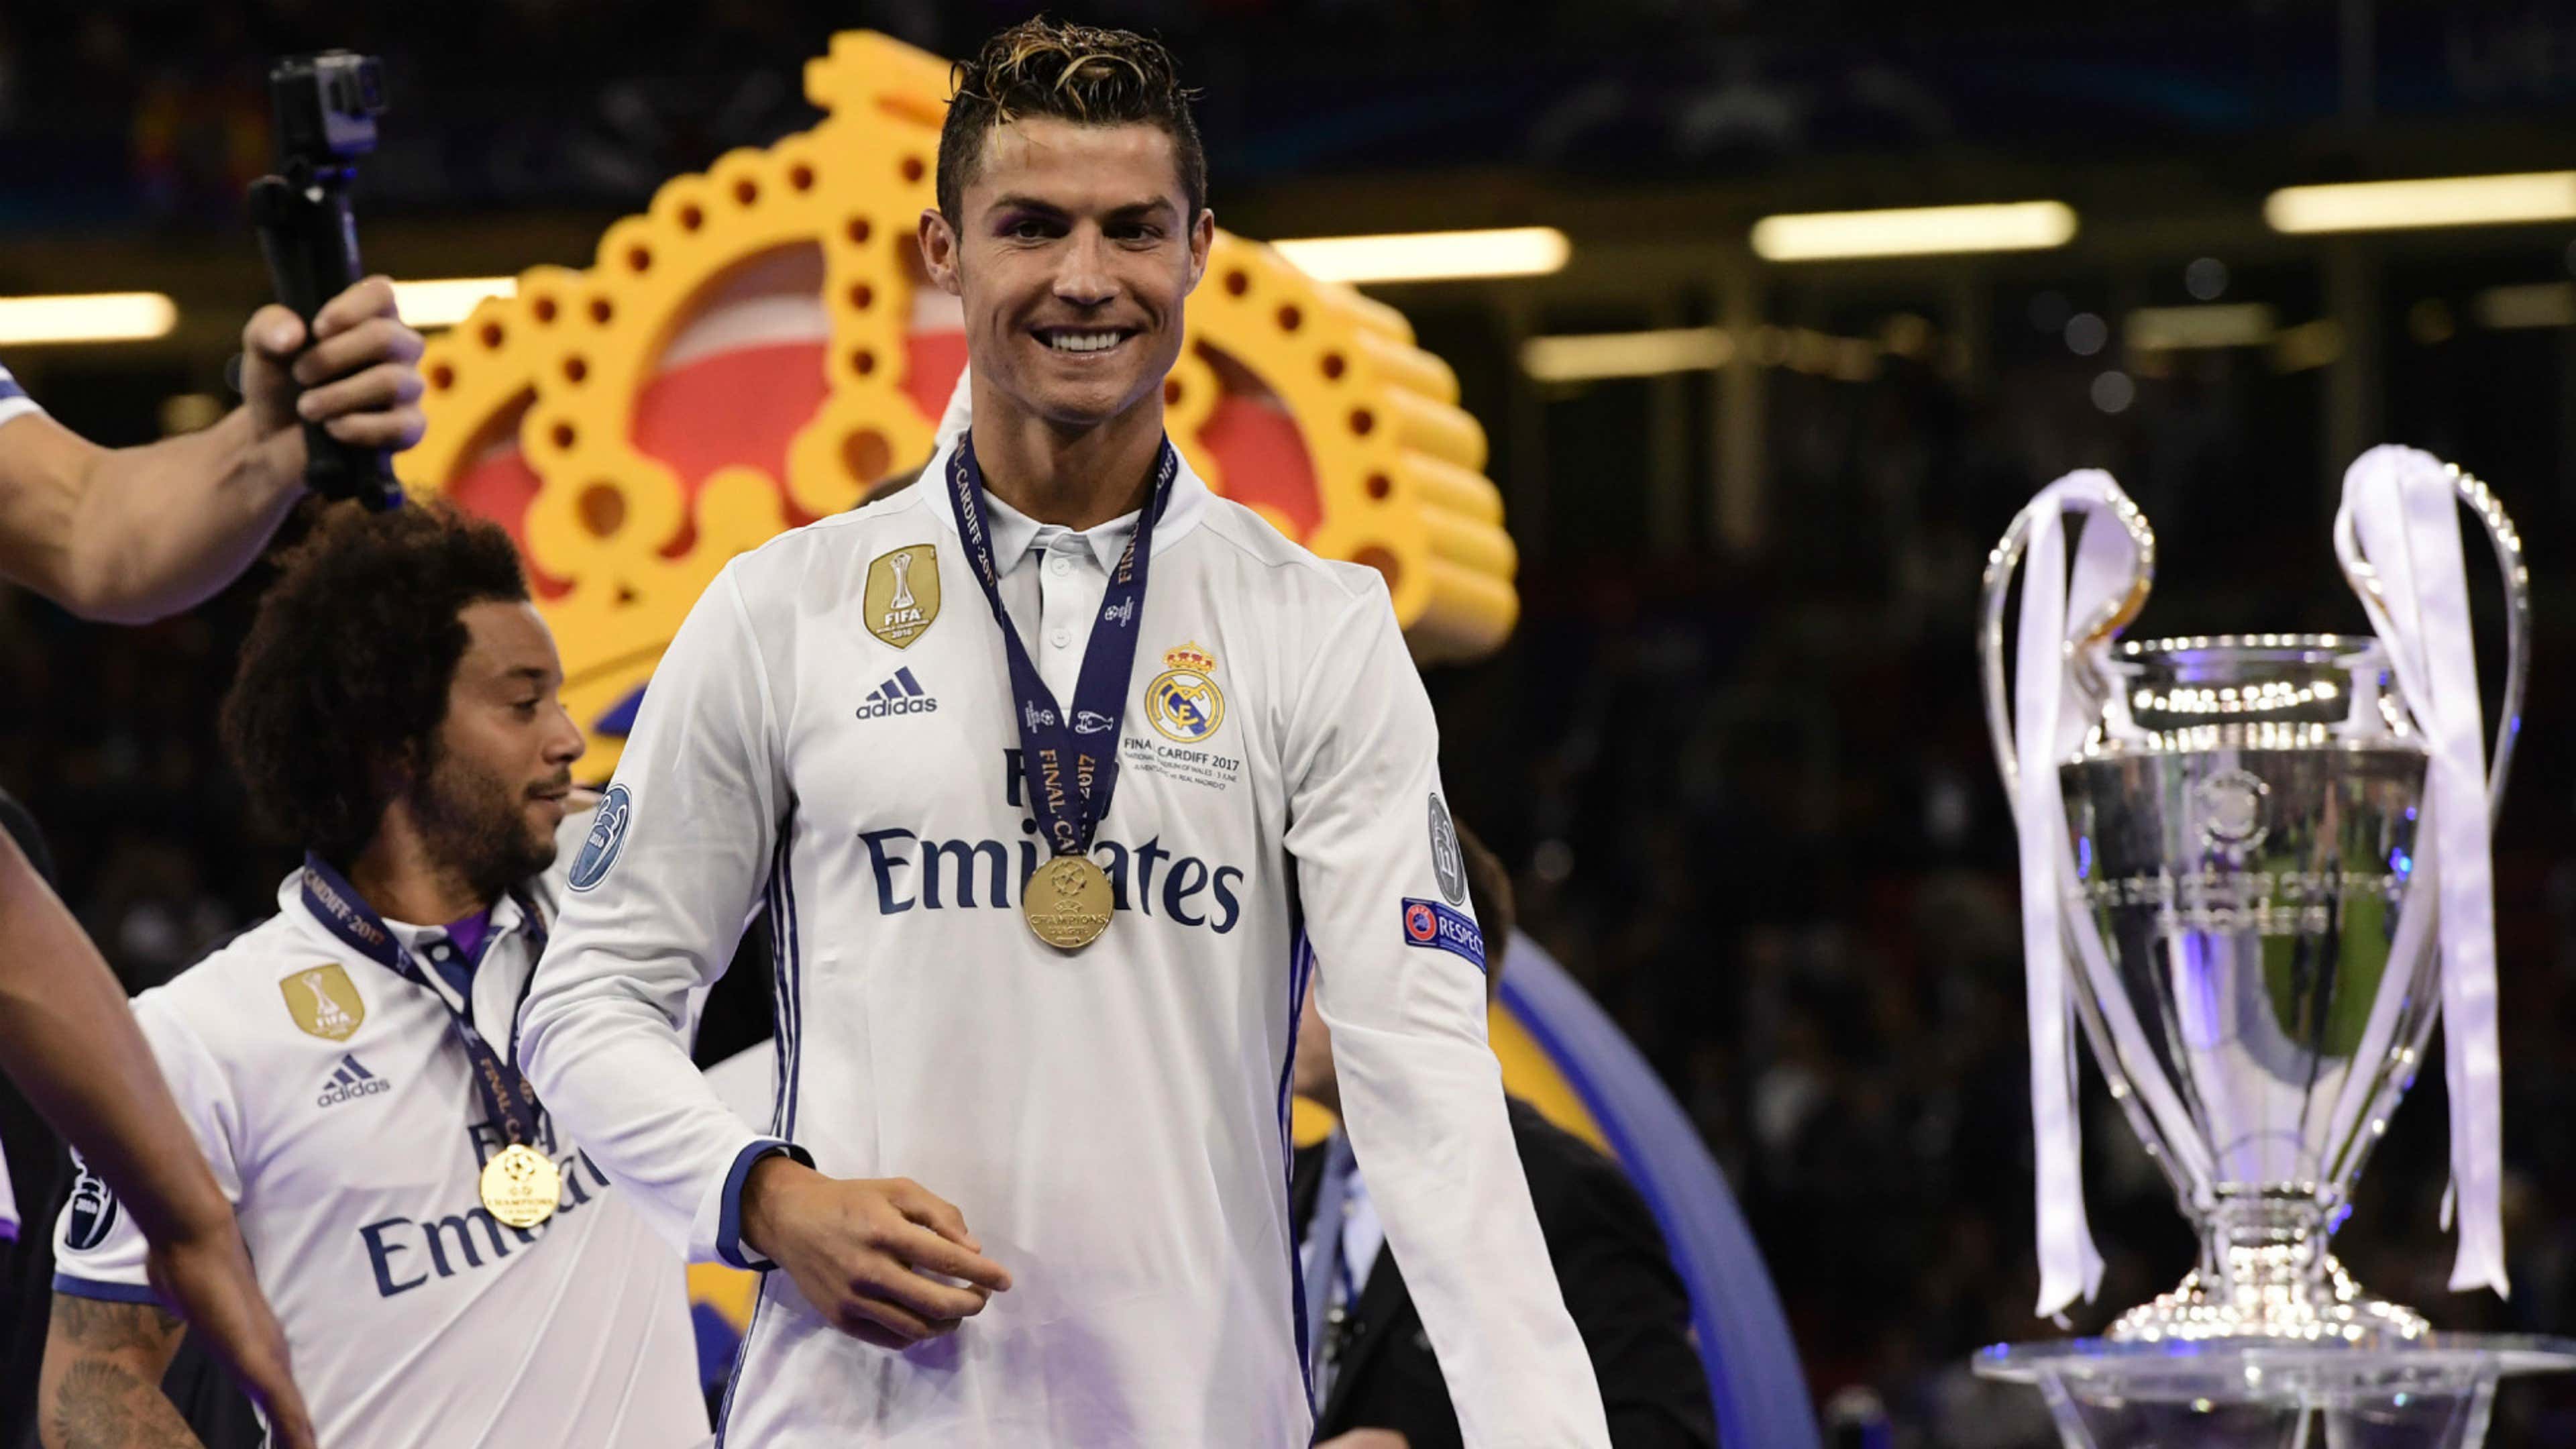 Fórum de Discussão do Bigslam: A estrela do futebol mundial – Cristiano  Ronaldo!